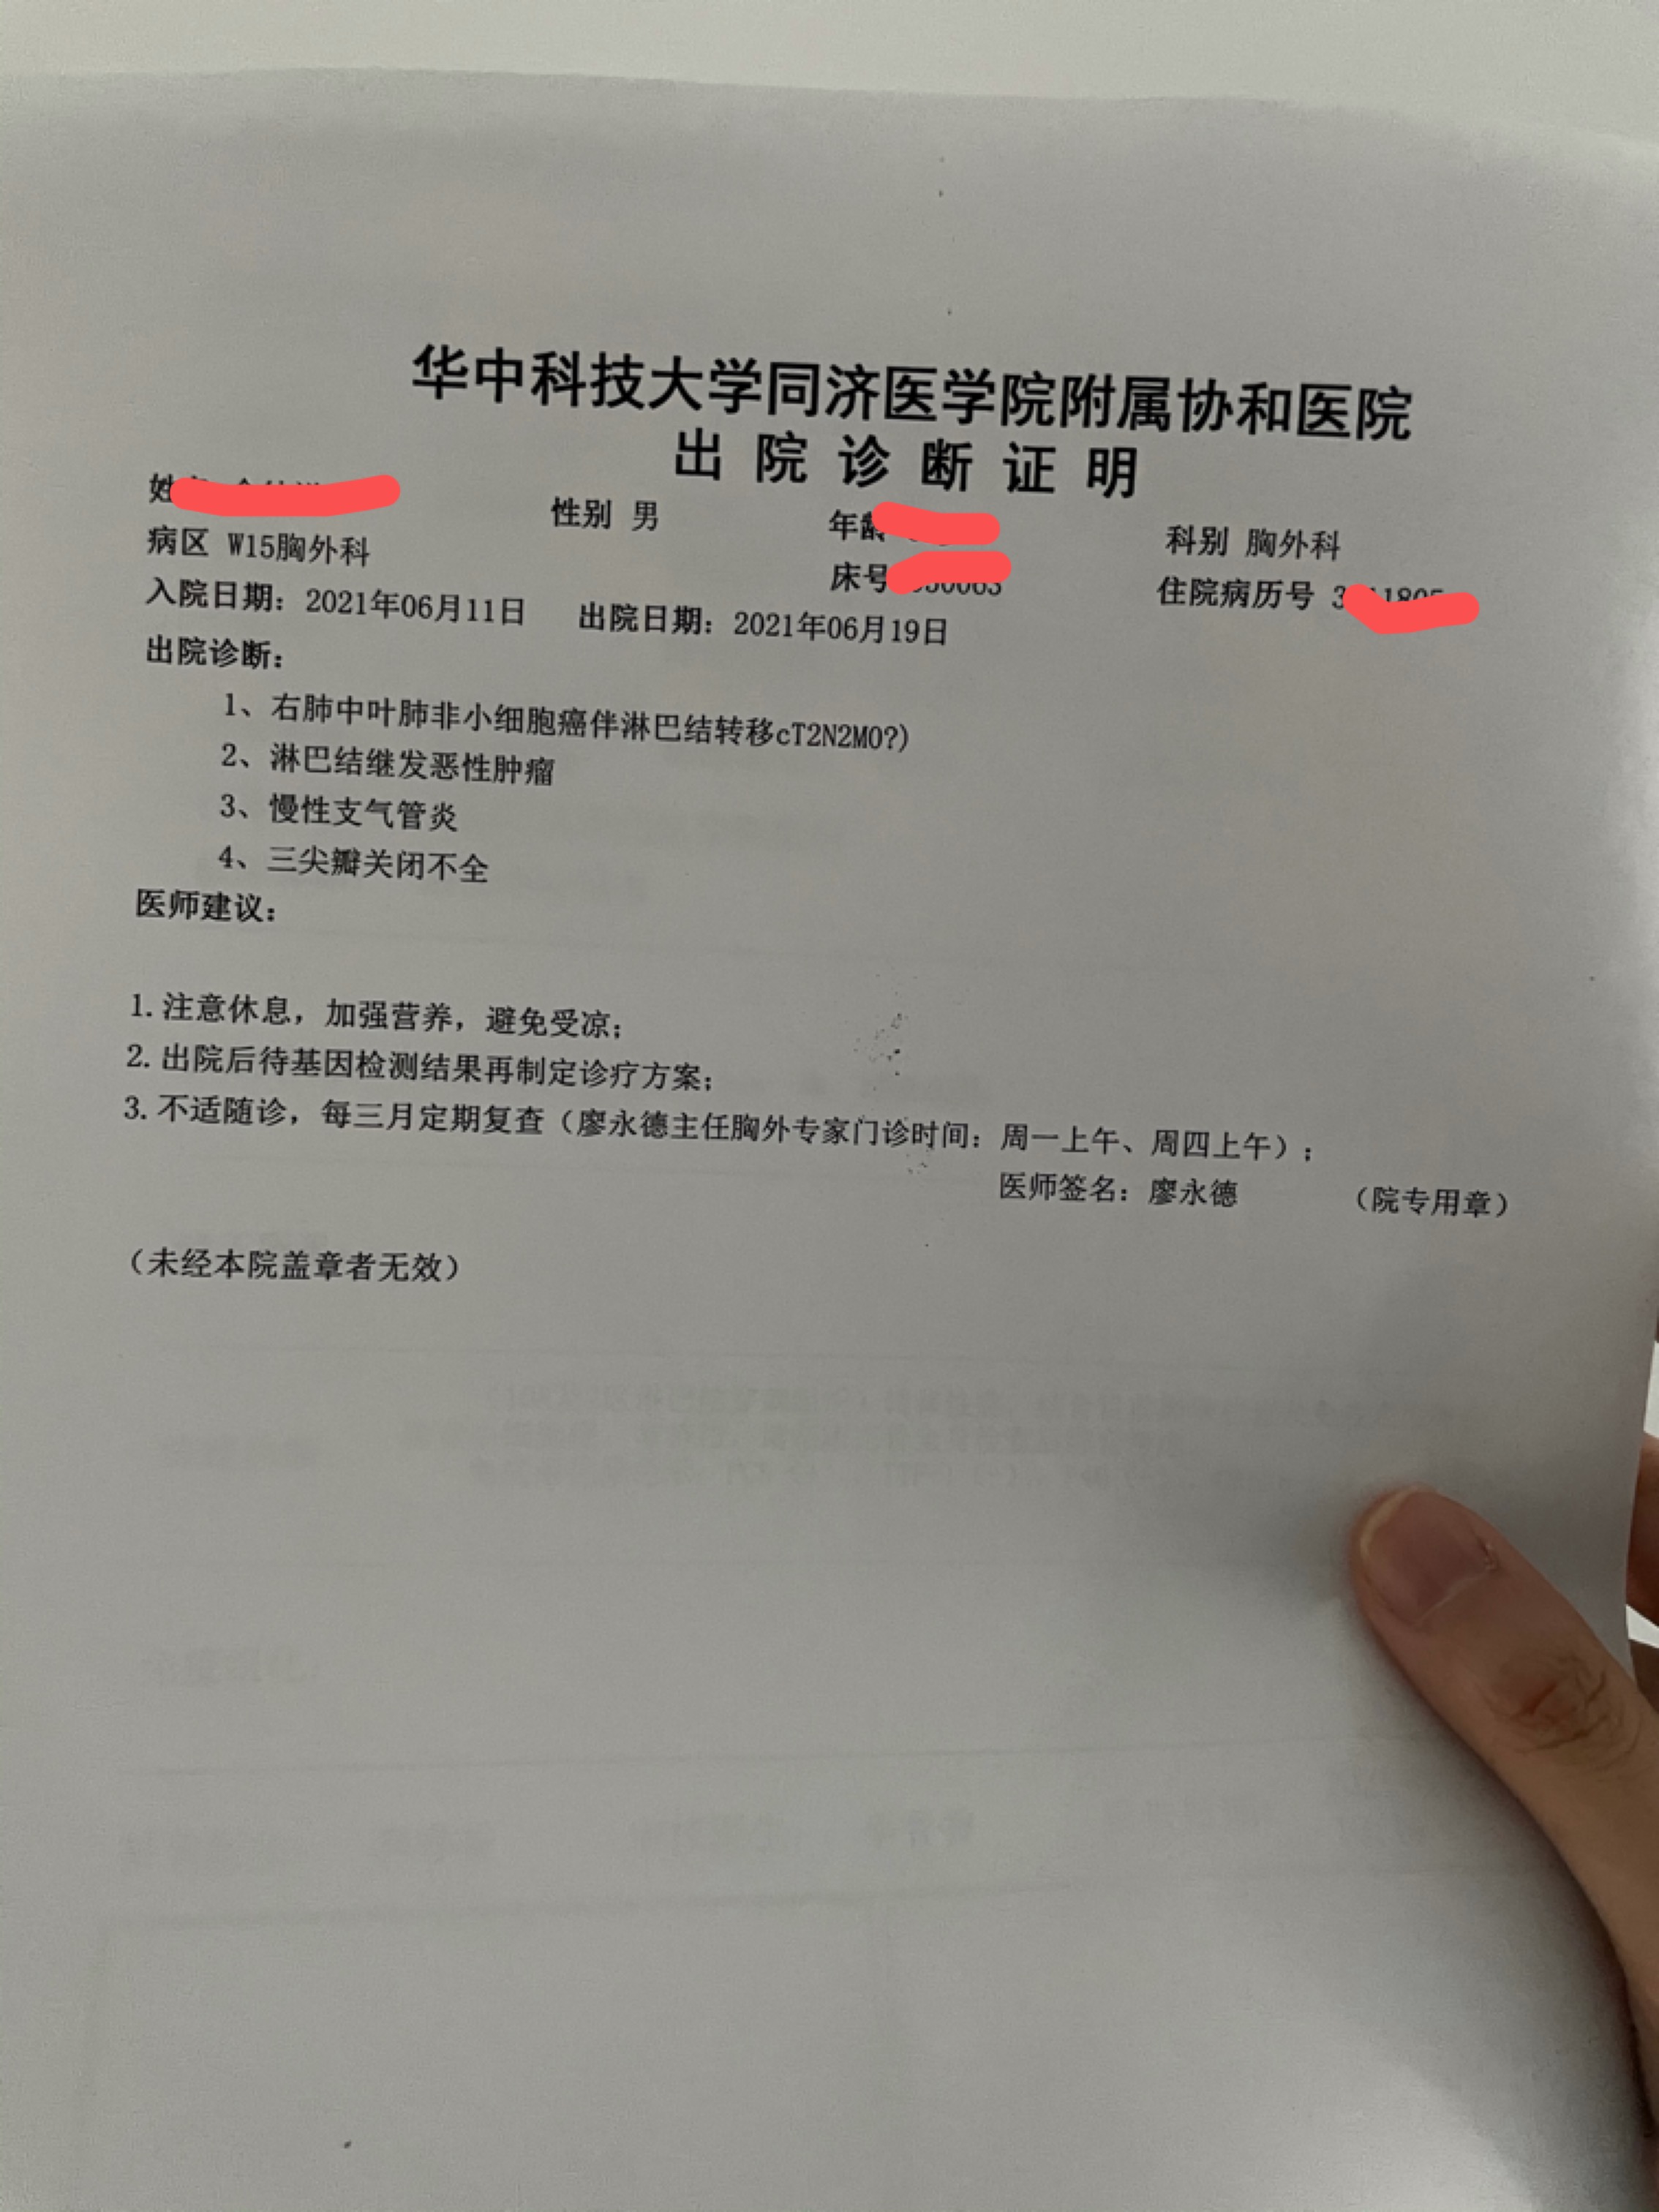 2019-05-18辉瑞肺癌创新药多泽润（达可替尼片）在中国获批